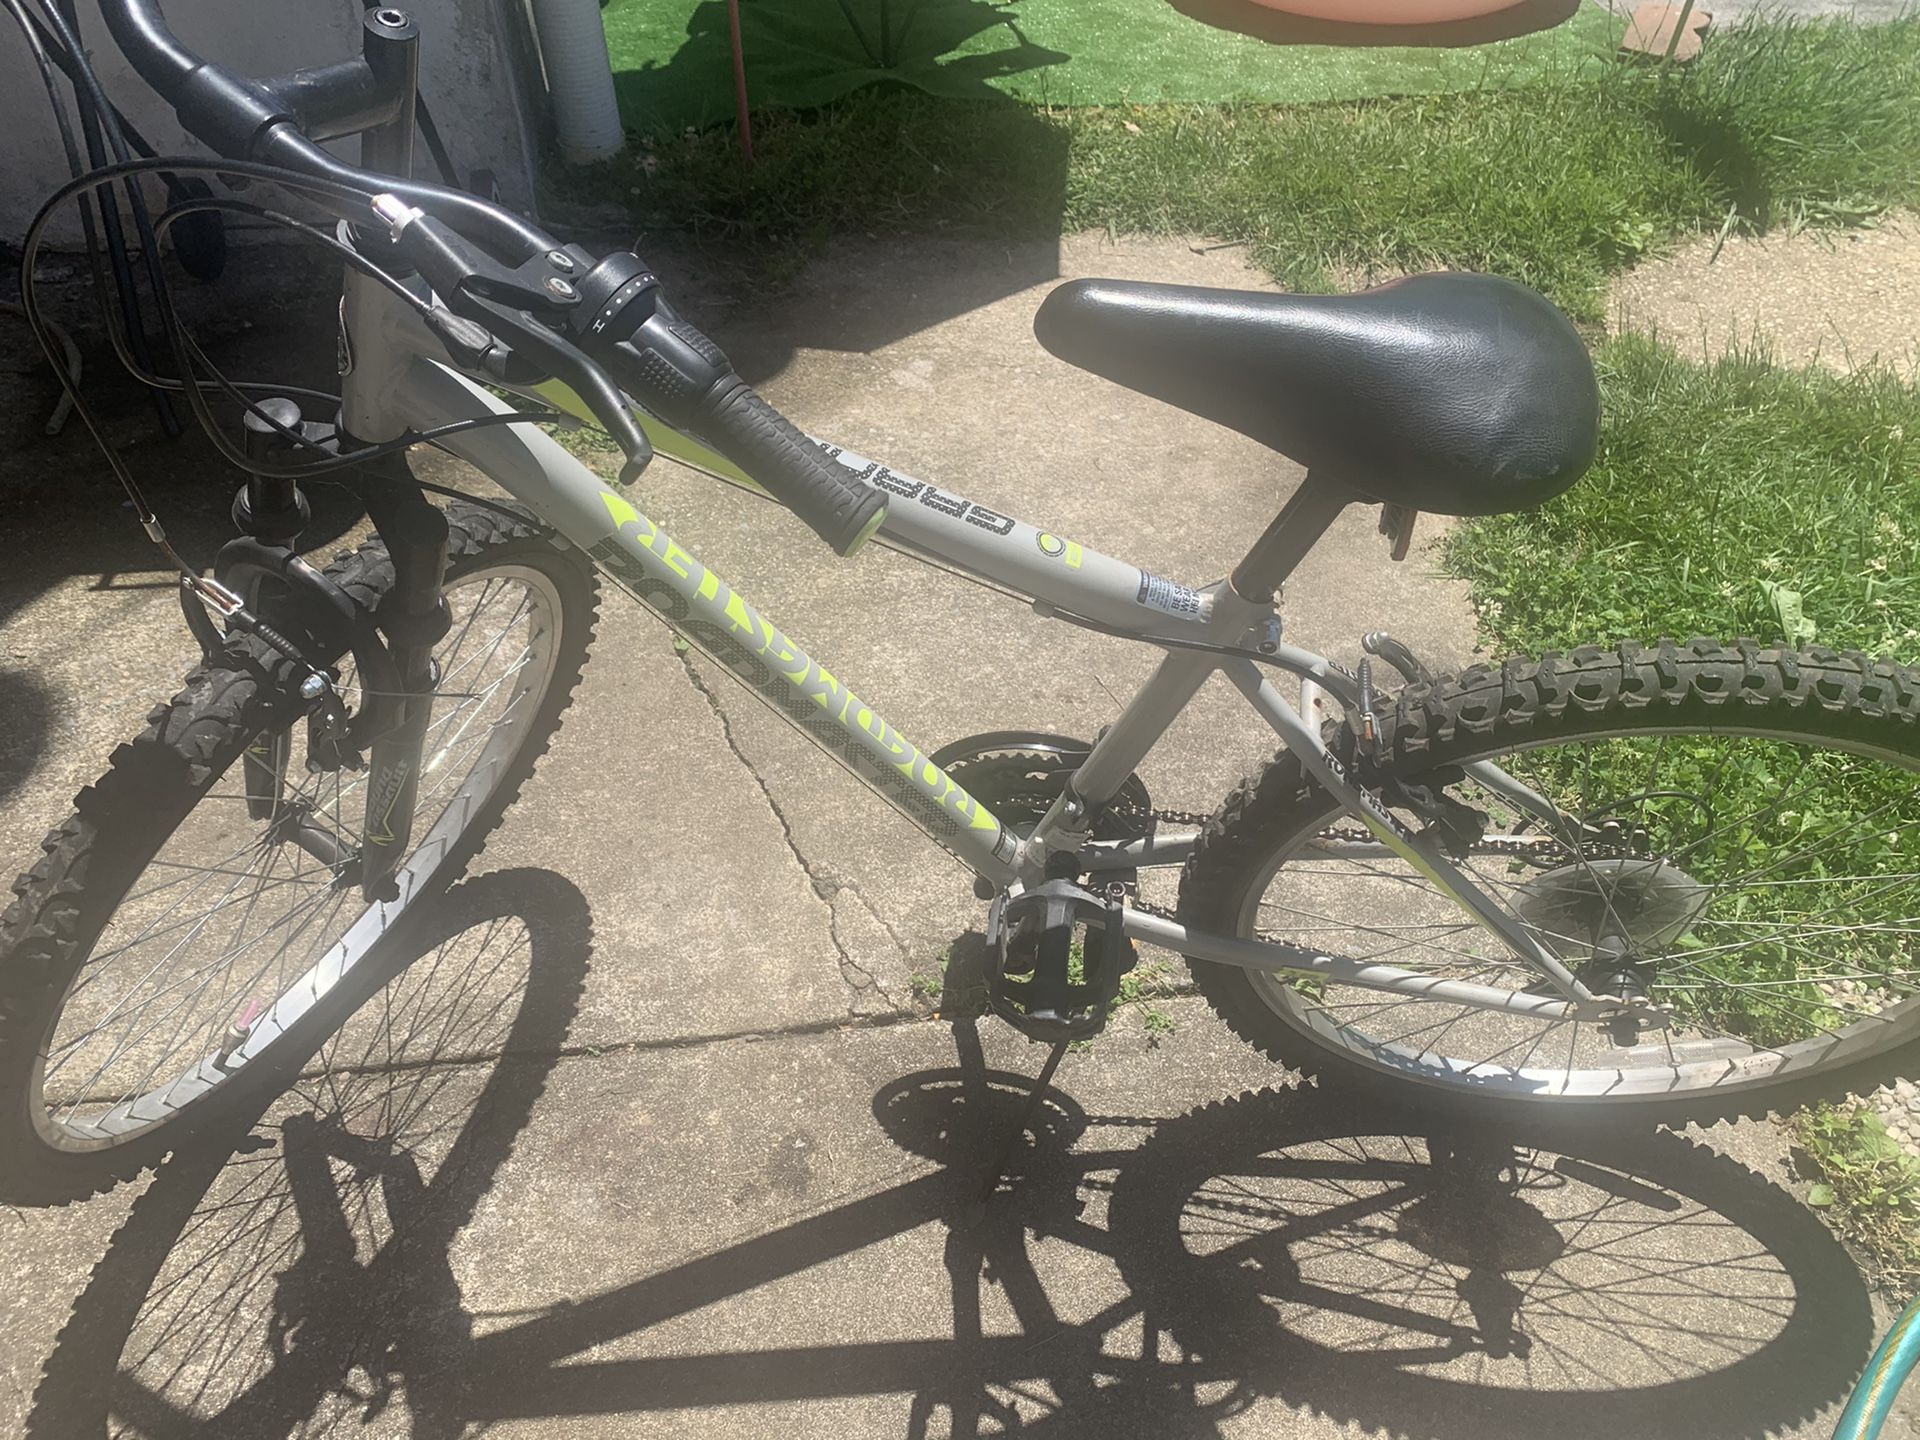 Roadmaster 24” bicycle for sale used but in good condition $50 Bicicleta 24” a la venta usada en buen estado